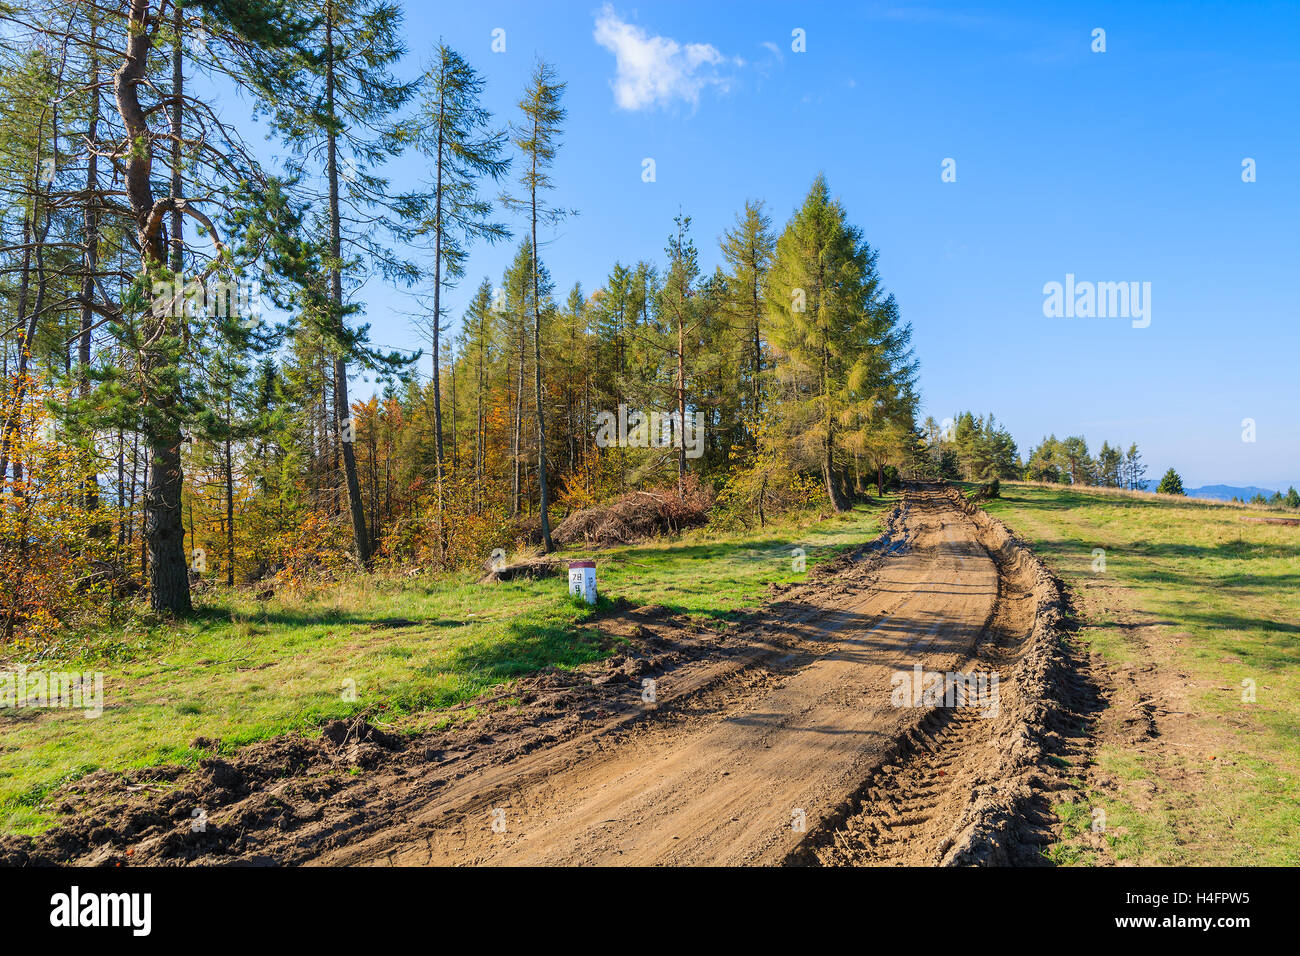 Rural road in Pieniny Mountains in autumn season, Poland Stock Photo